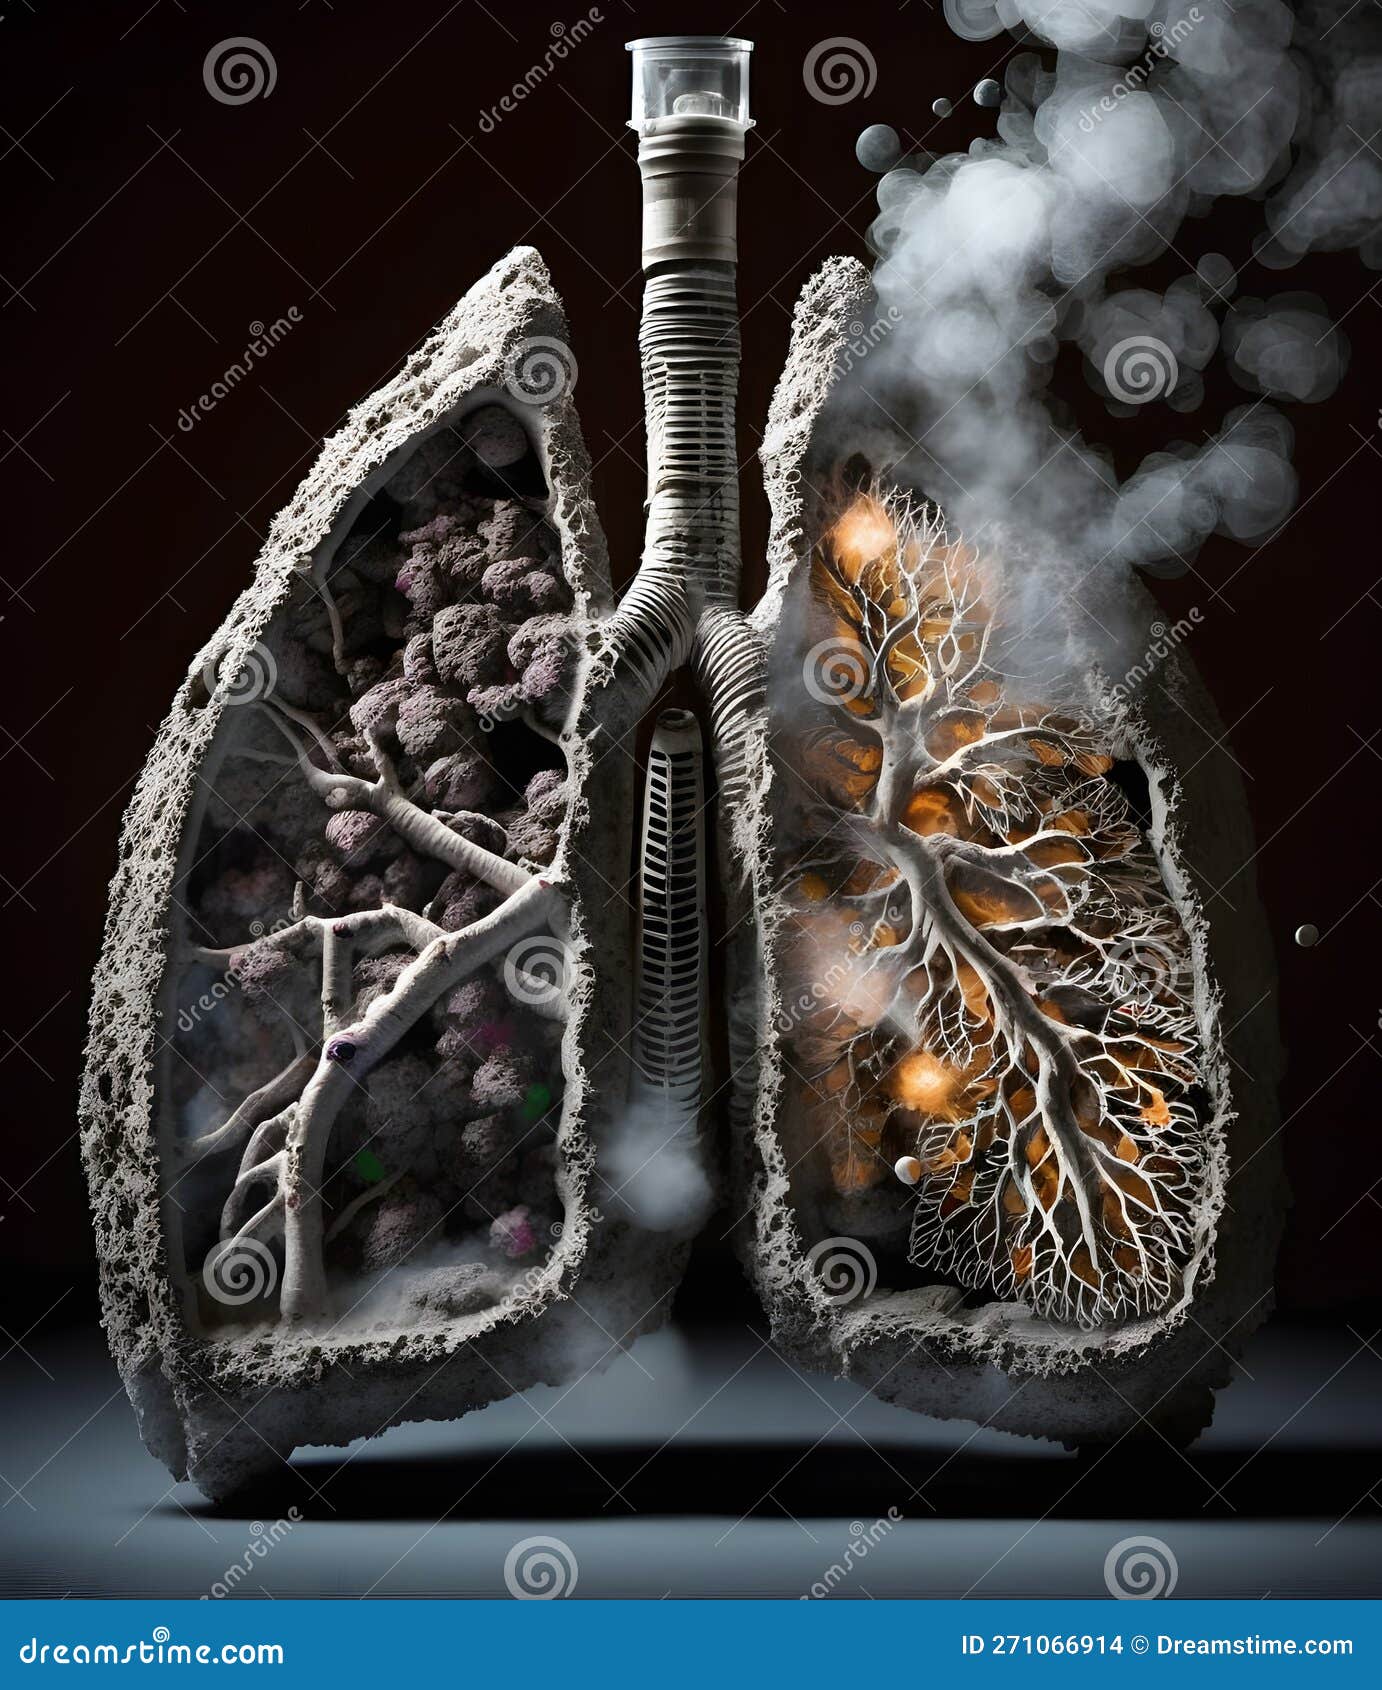 用灰烬建造的肺的概念形象. 世界反香烟日. 不抽烟. 戒烟